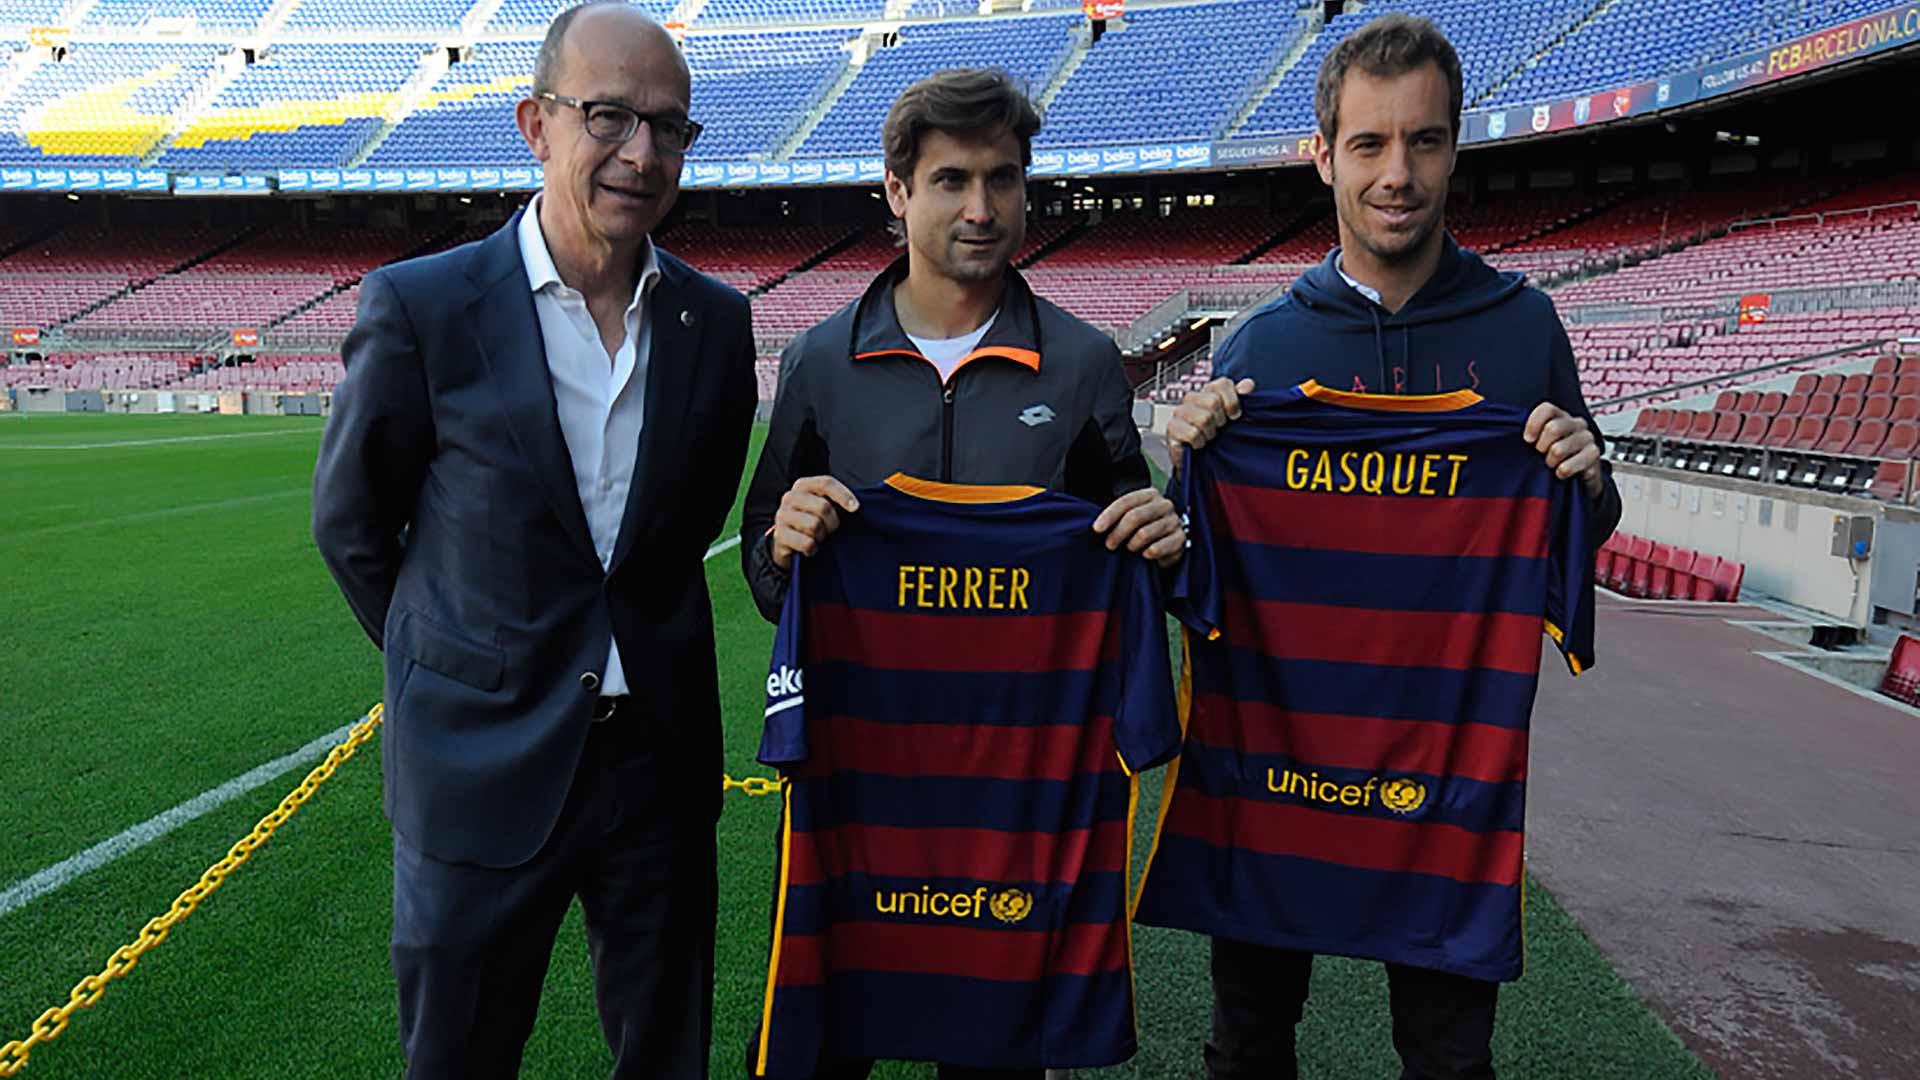 Ferrer và Gasquet đến thăm CLB Barcelona trước thềm giải đấu